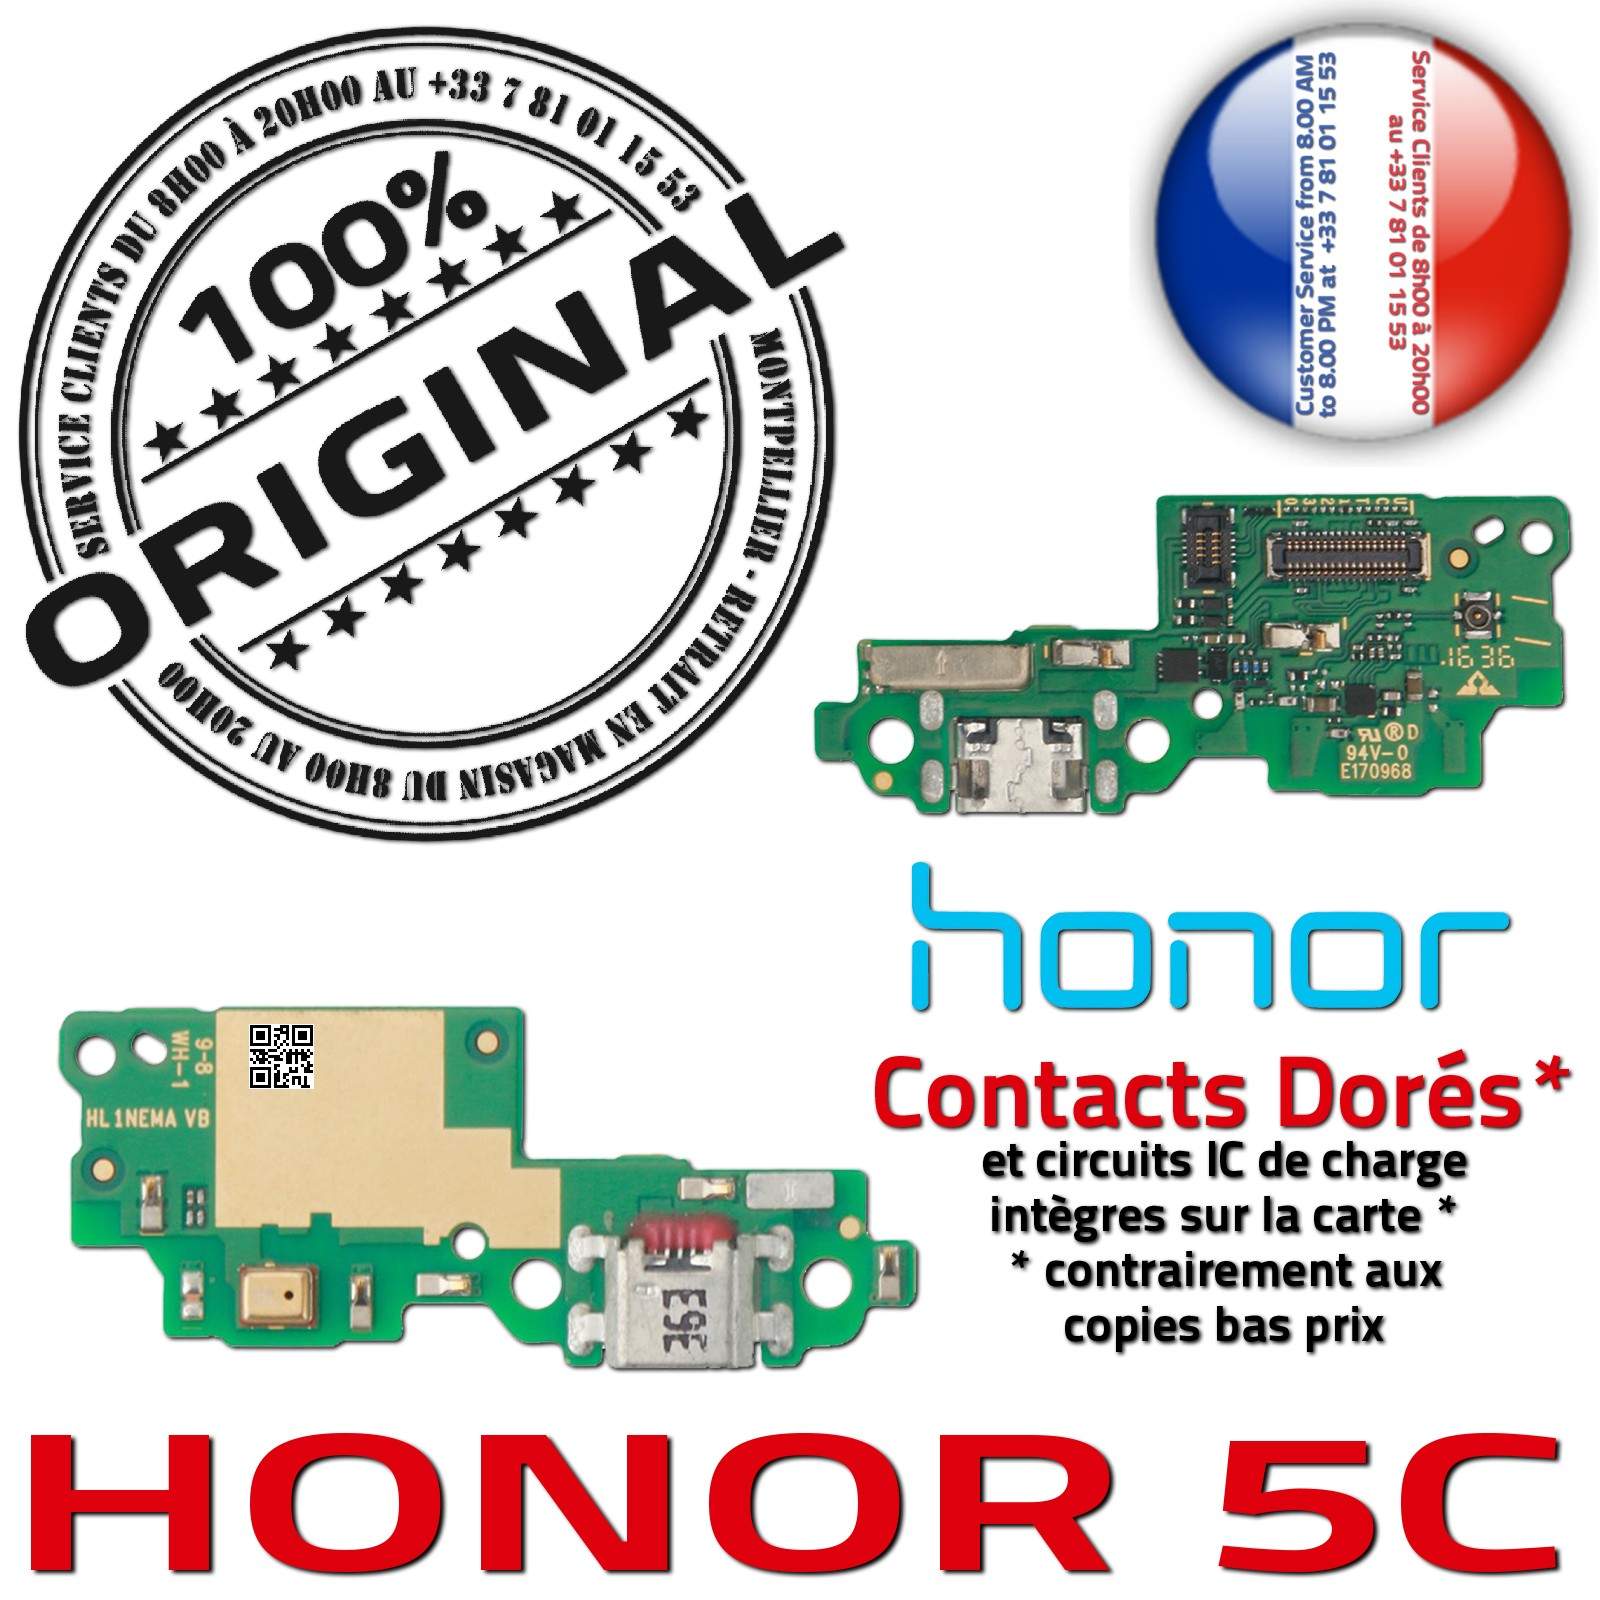 Honor 5C PORT Chargeur ORIGINAL Téléphone Prise Charge USB Nappe Micro OFFICIELLE Qualité Microphone Antenne RESEAU Câble JACK